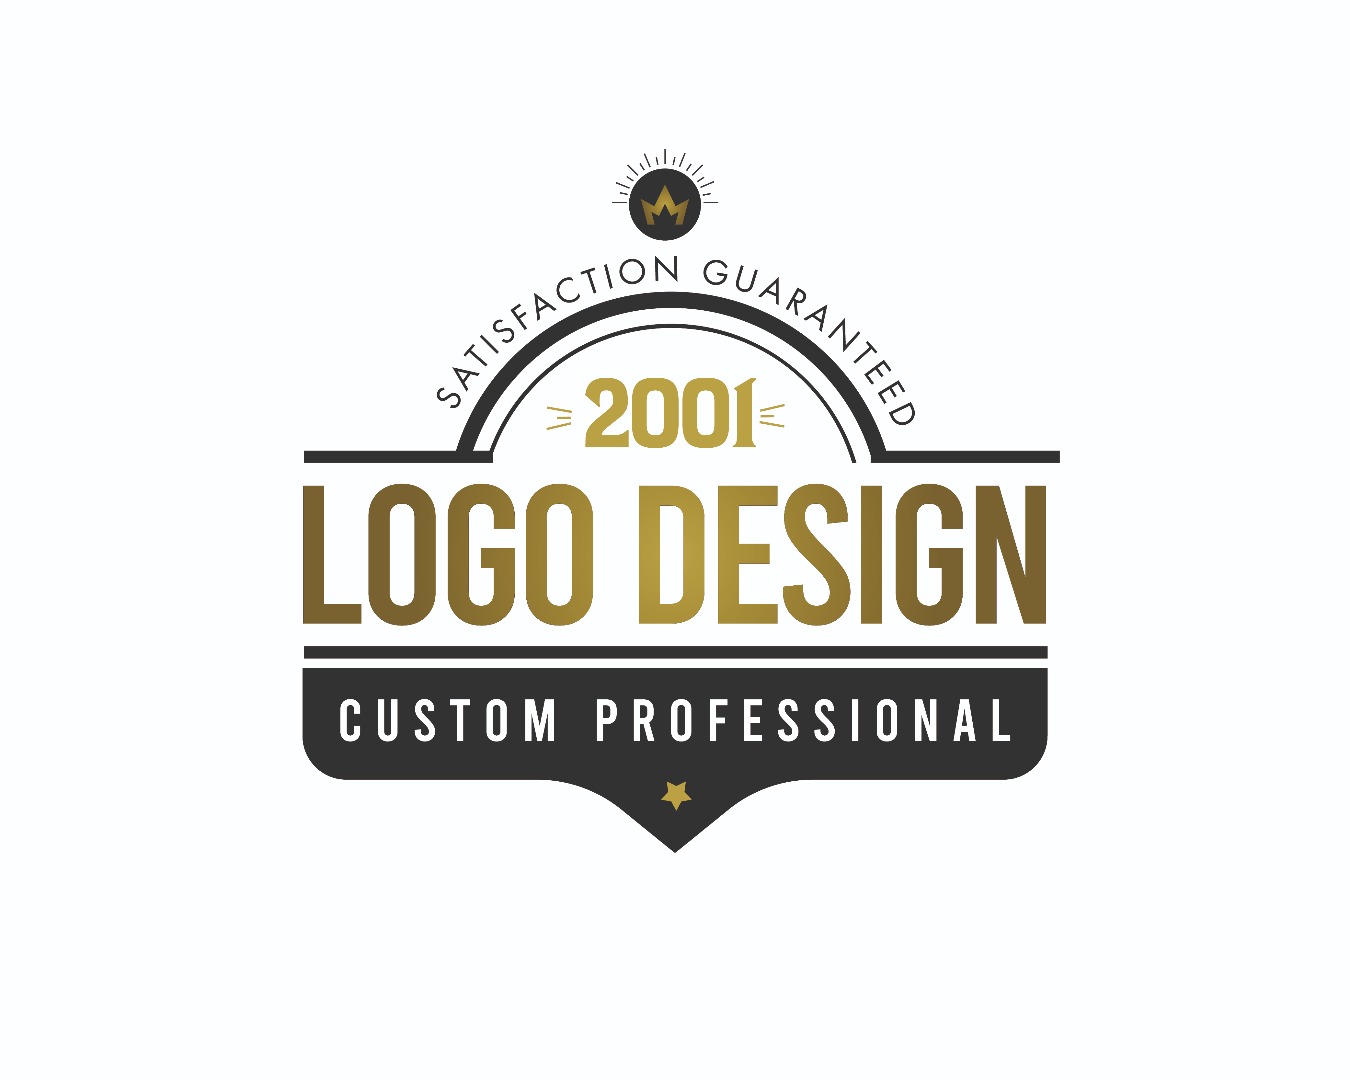 Logo Design Package